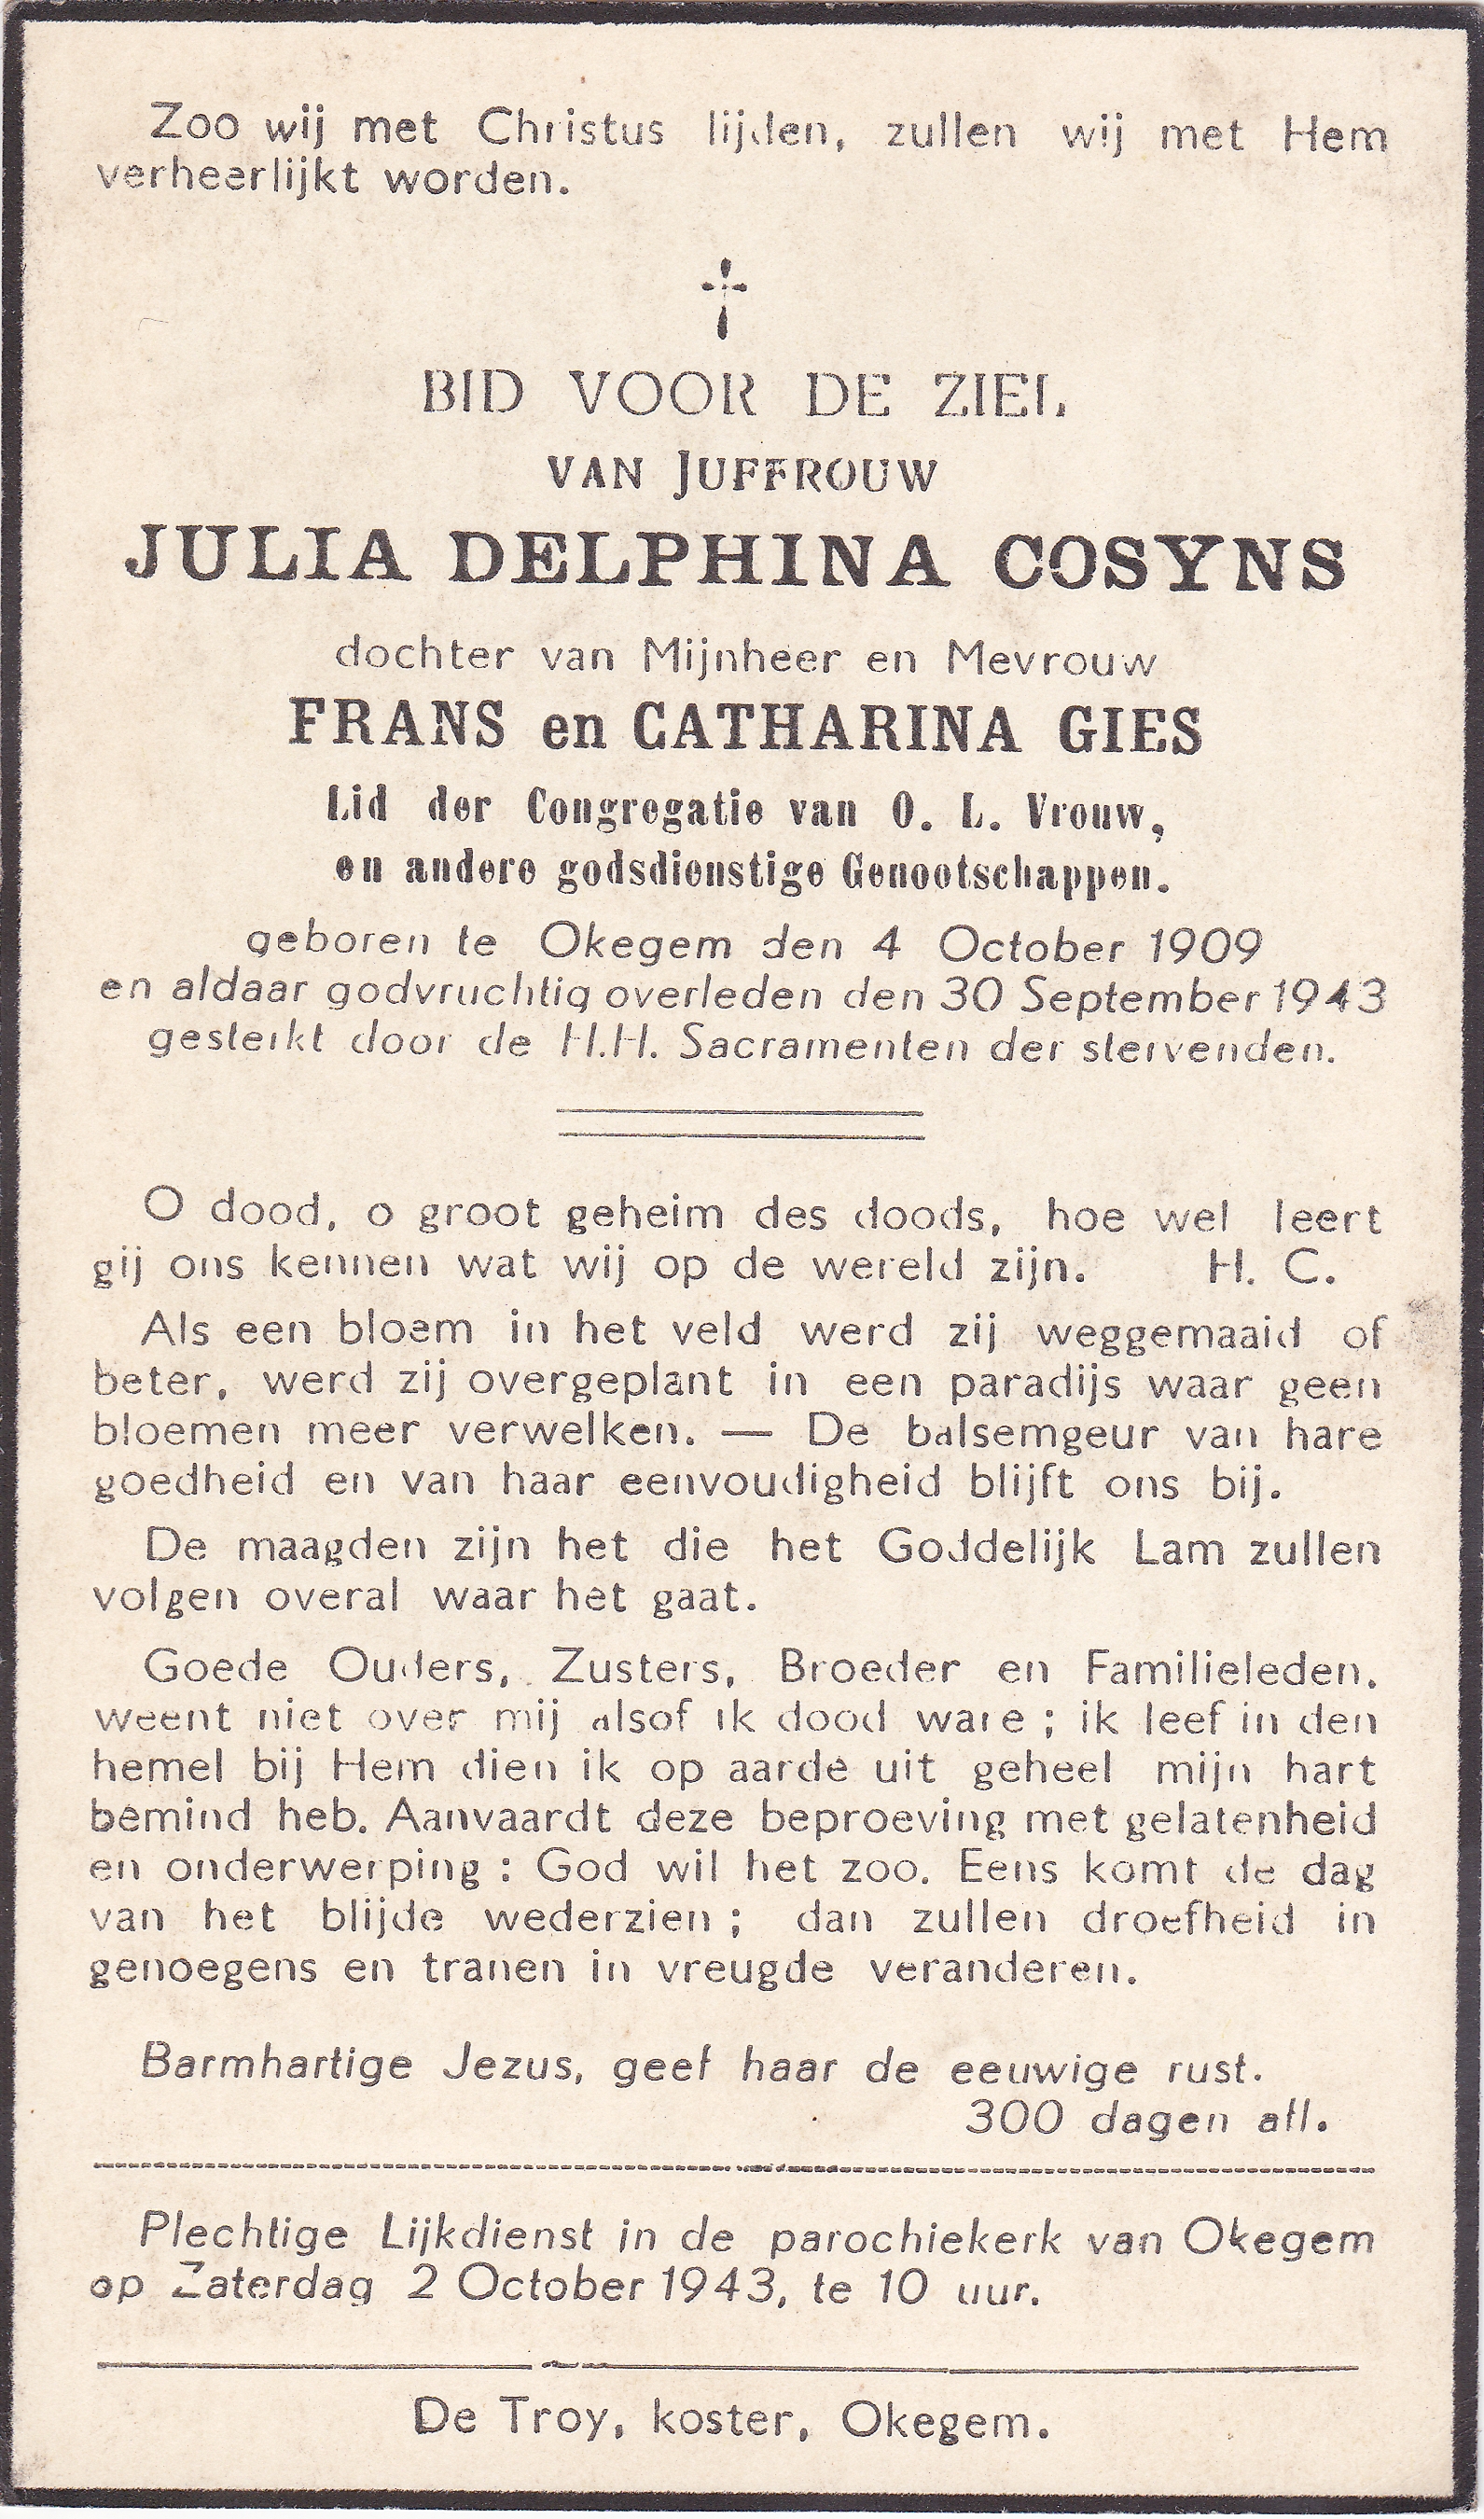 Cosyns Julia Delphina